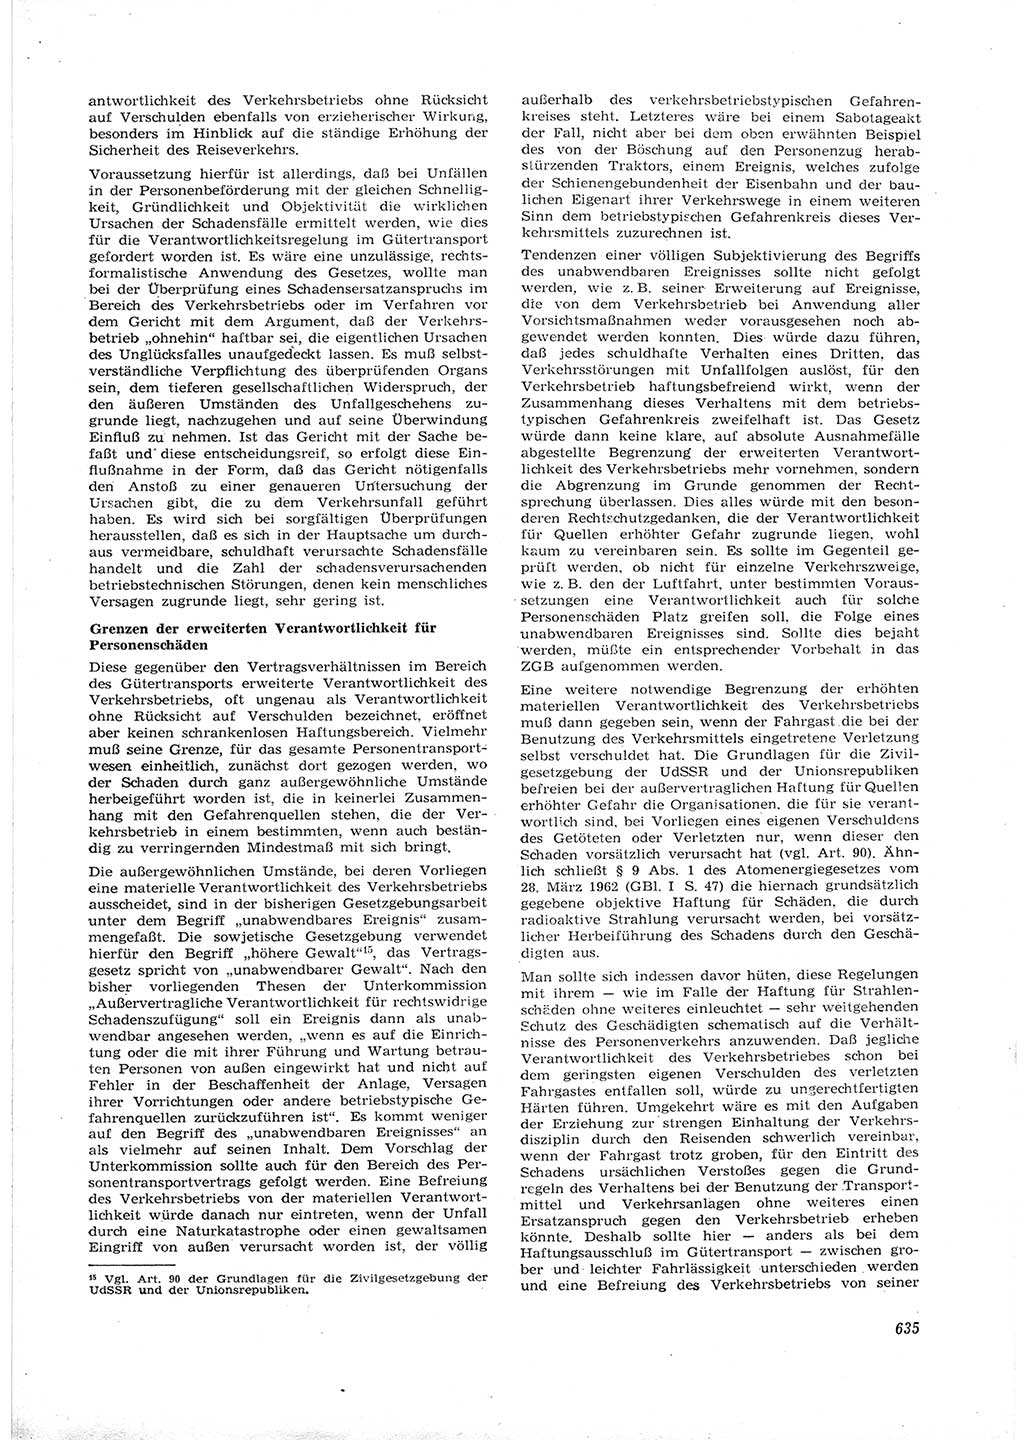 Neue Justiz (NJ), Zeitschrift für Recht und Rechtswissenschaft [Deutsche Demokratische Republik (DDR)], 16. Jahrgang 1962, Seite 635 (NJ DDR 1962, S. 635)